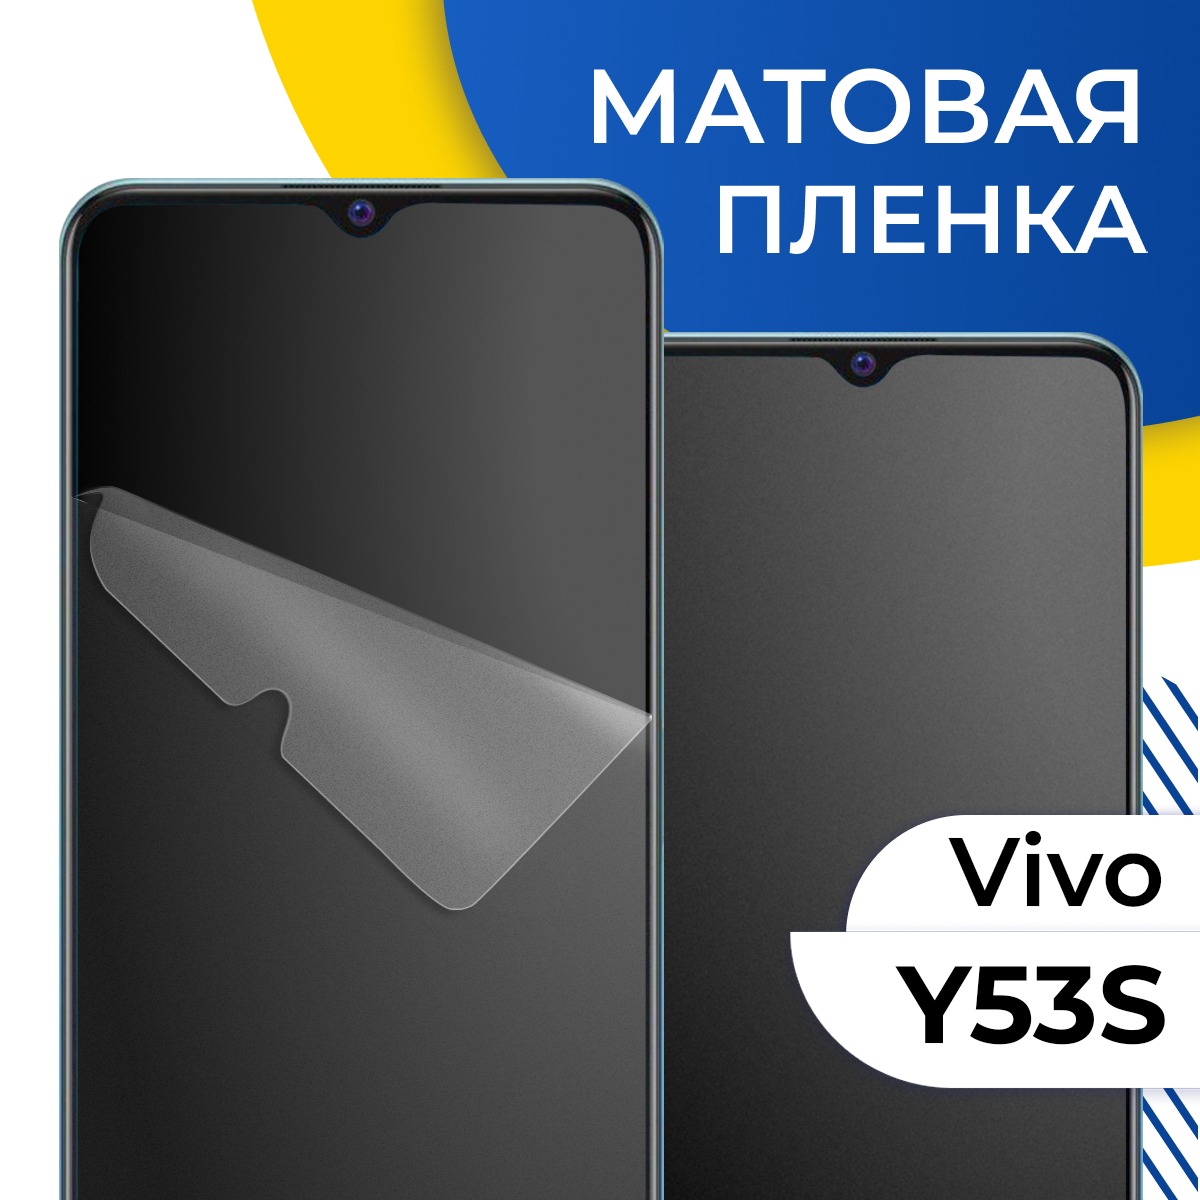 Комплект 2 шт. Матовая гидрогелевая пленка для телефона Vivo Y53S / Самовосстанавливающаяся защитная пленка на смартфон Виво У53С / Противоударная